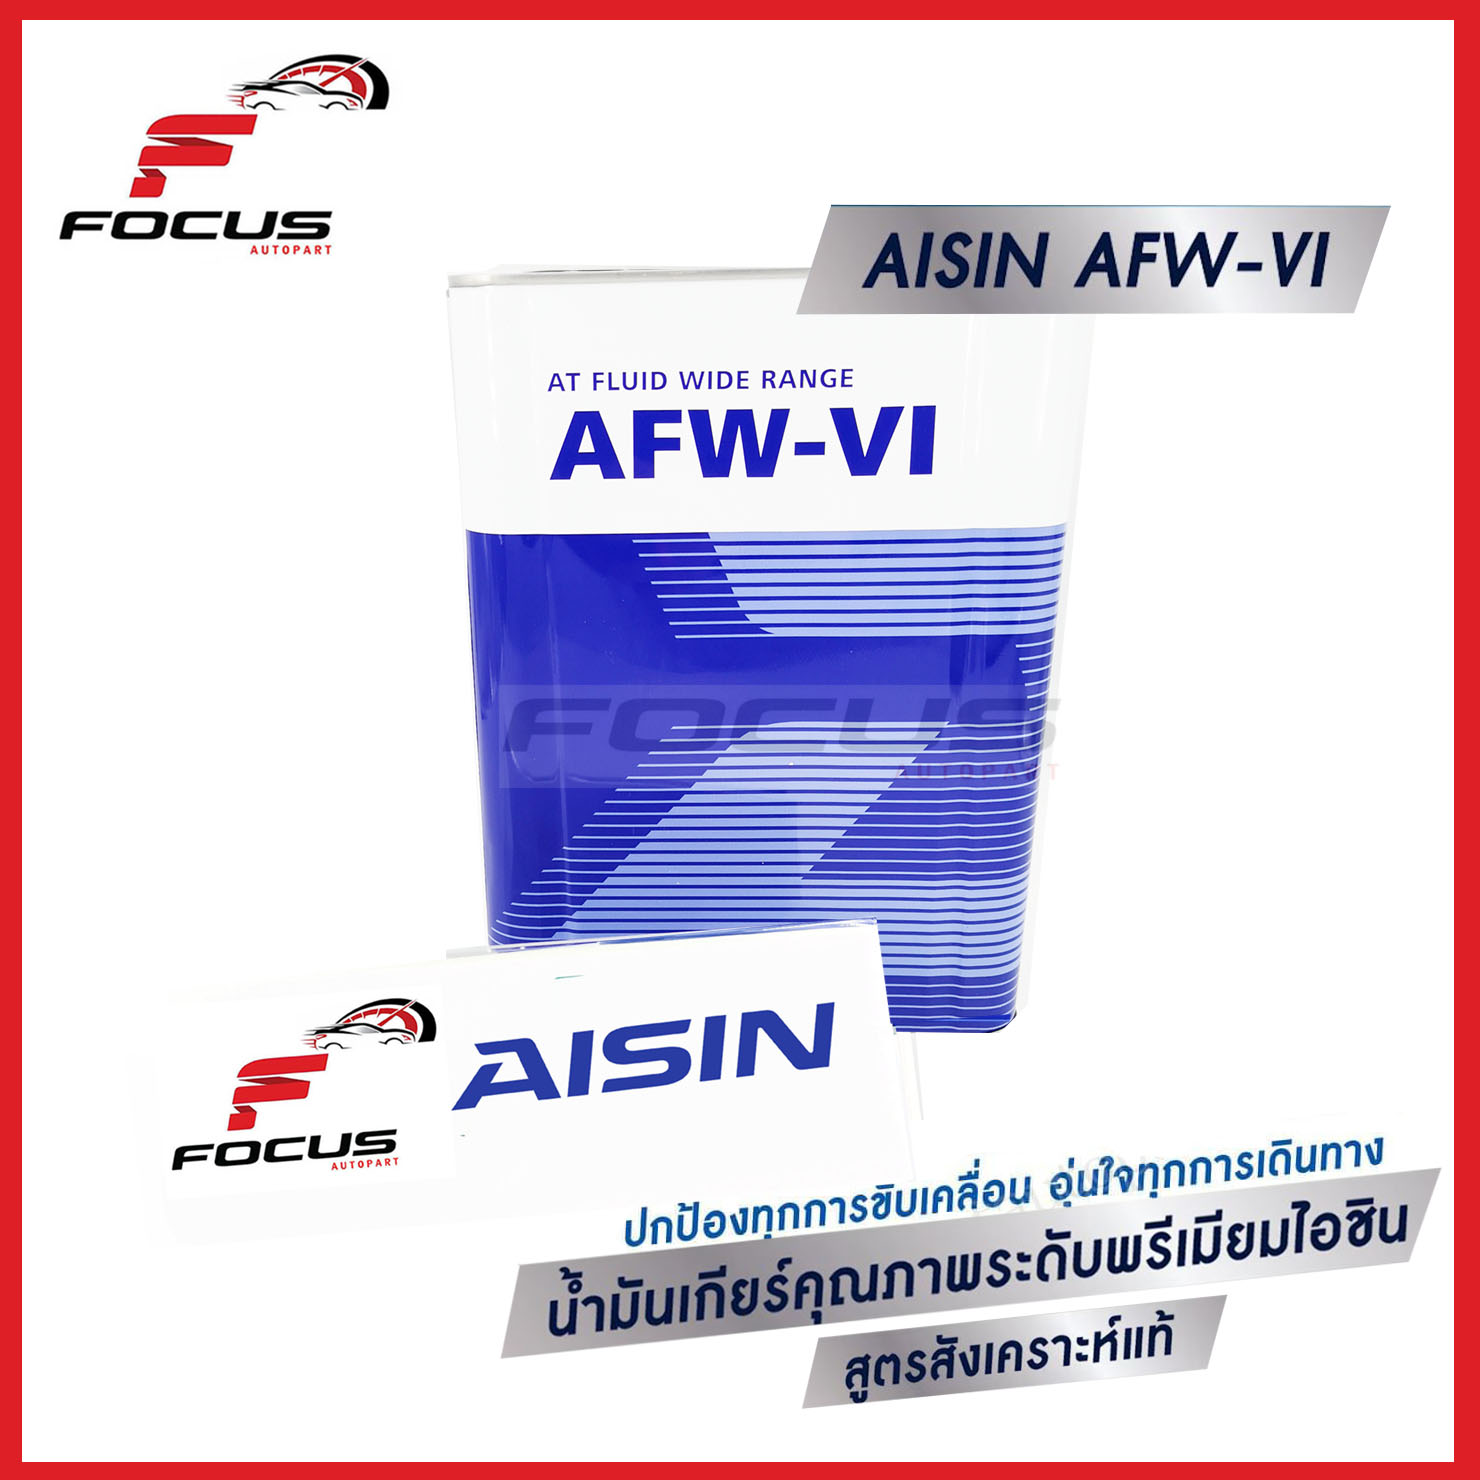 AISIN น้ำมันเกียร์อัตโนมัติสังเคราะห์100% ไอซิน Aisin AFW-VI / AFW VI  ขนาด 4ลิตร 5ลิตร 6ลิตร 7ลิตร / น้ำมันเกียร์ Aisin AFW VI Dexron VI Fully Synthetic